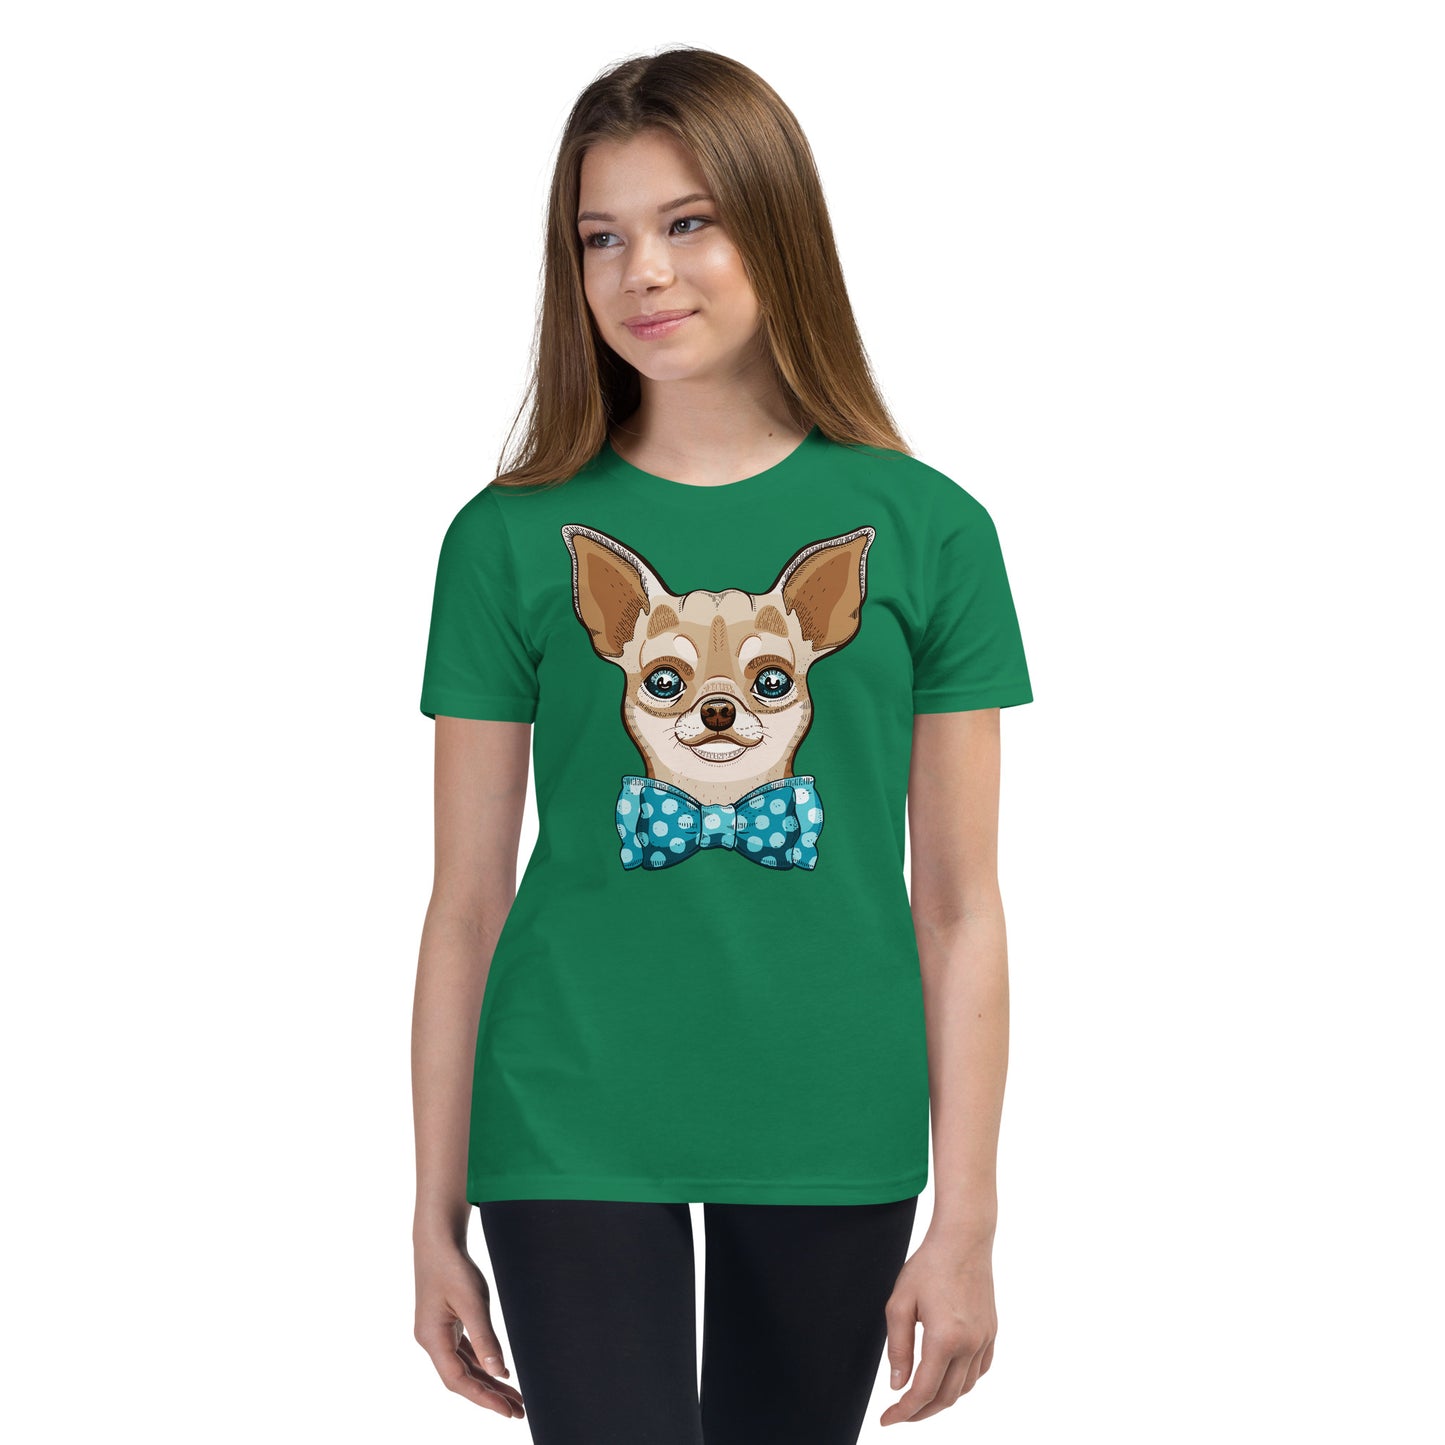 Elegant Funny Chihuahua Dog T-shirt, No. 0600